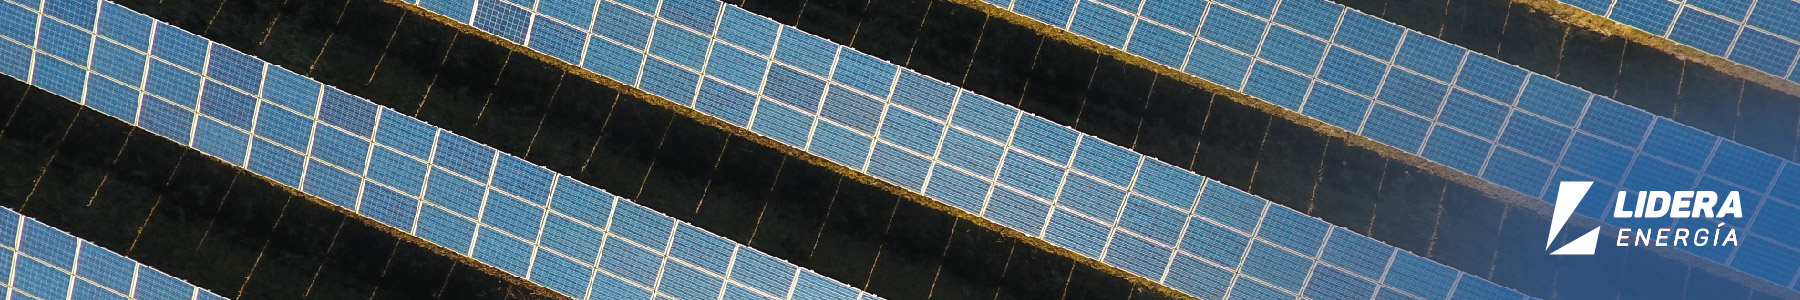 Cómo funcionan las placas solares 